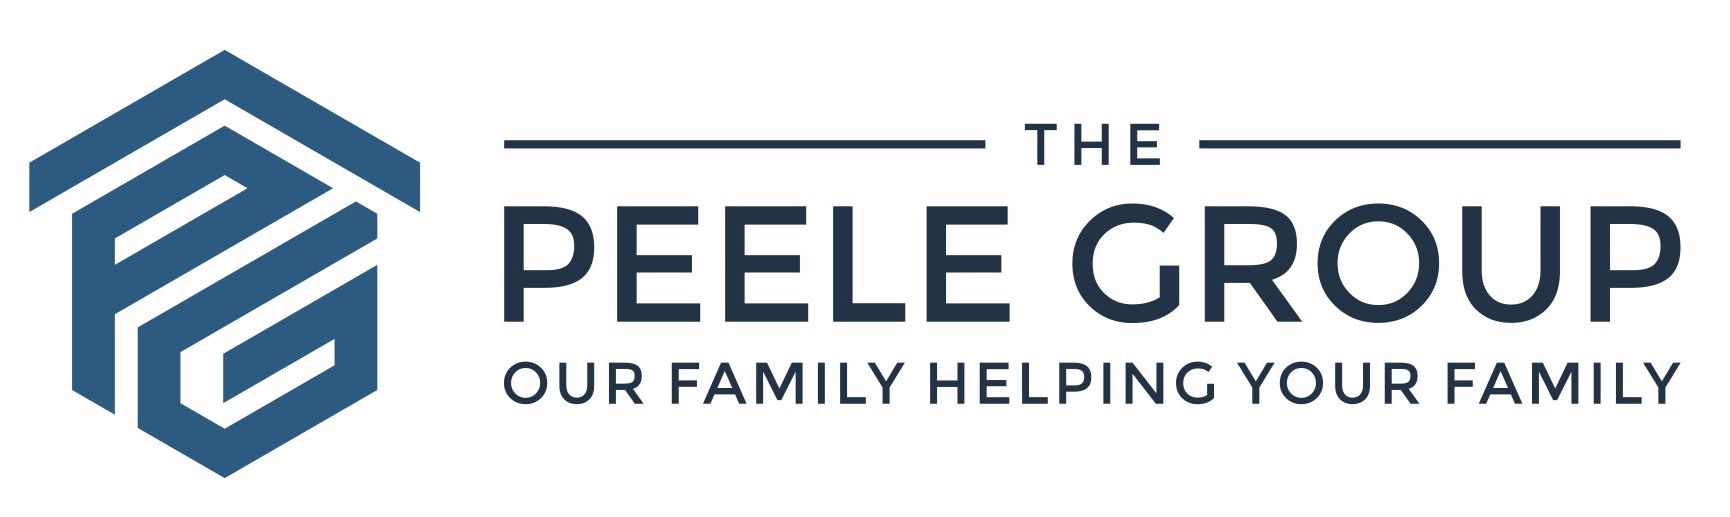 The Peele Group